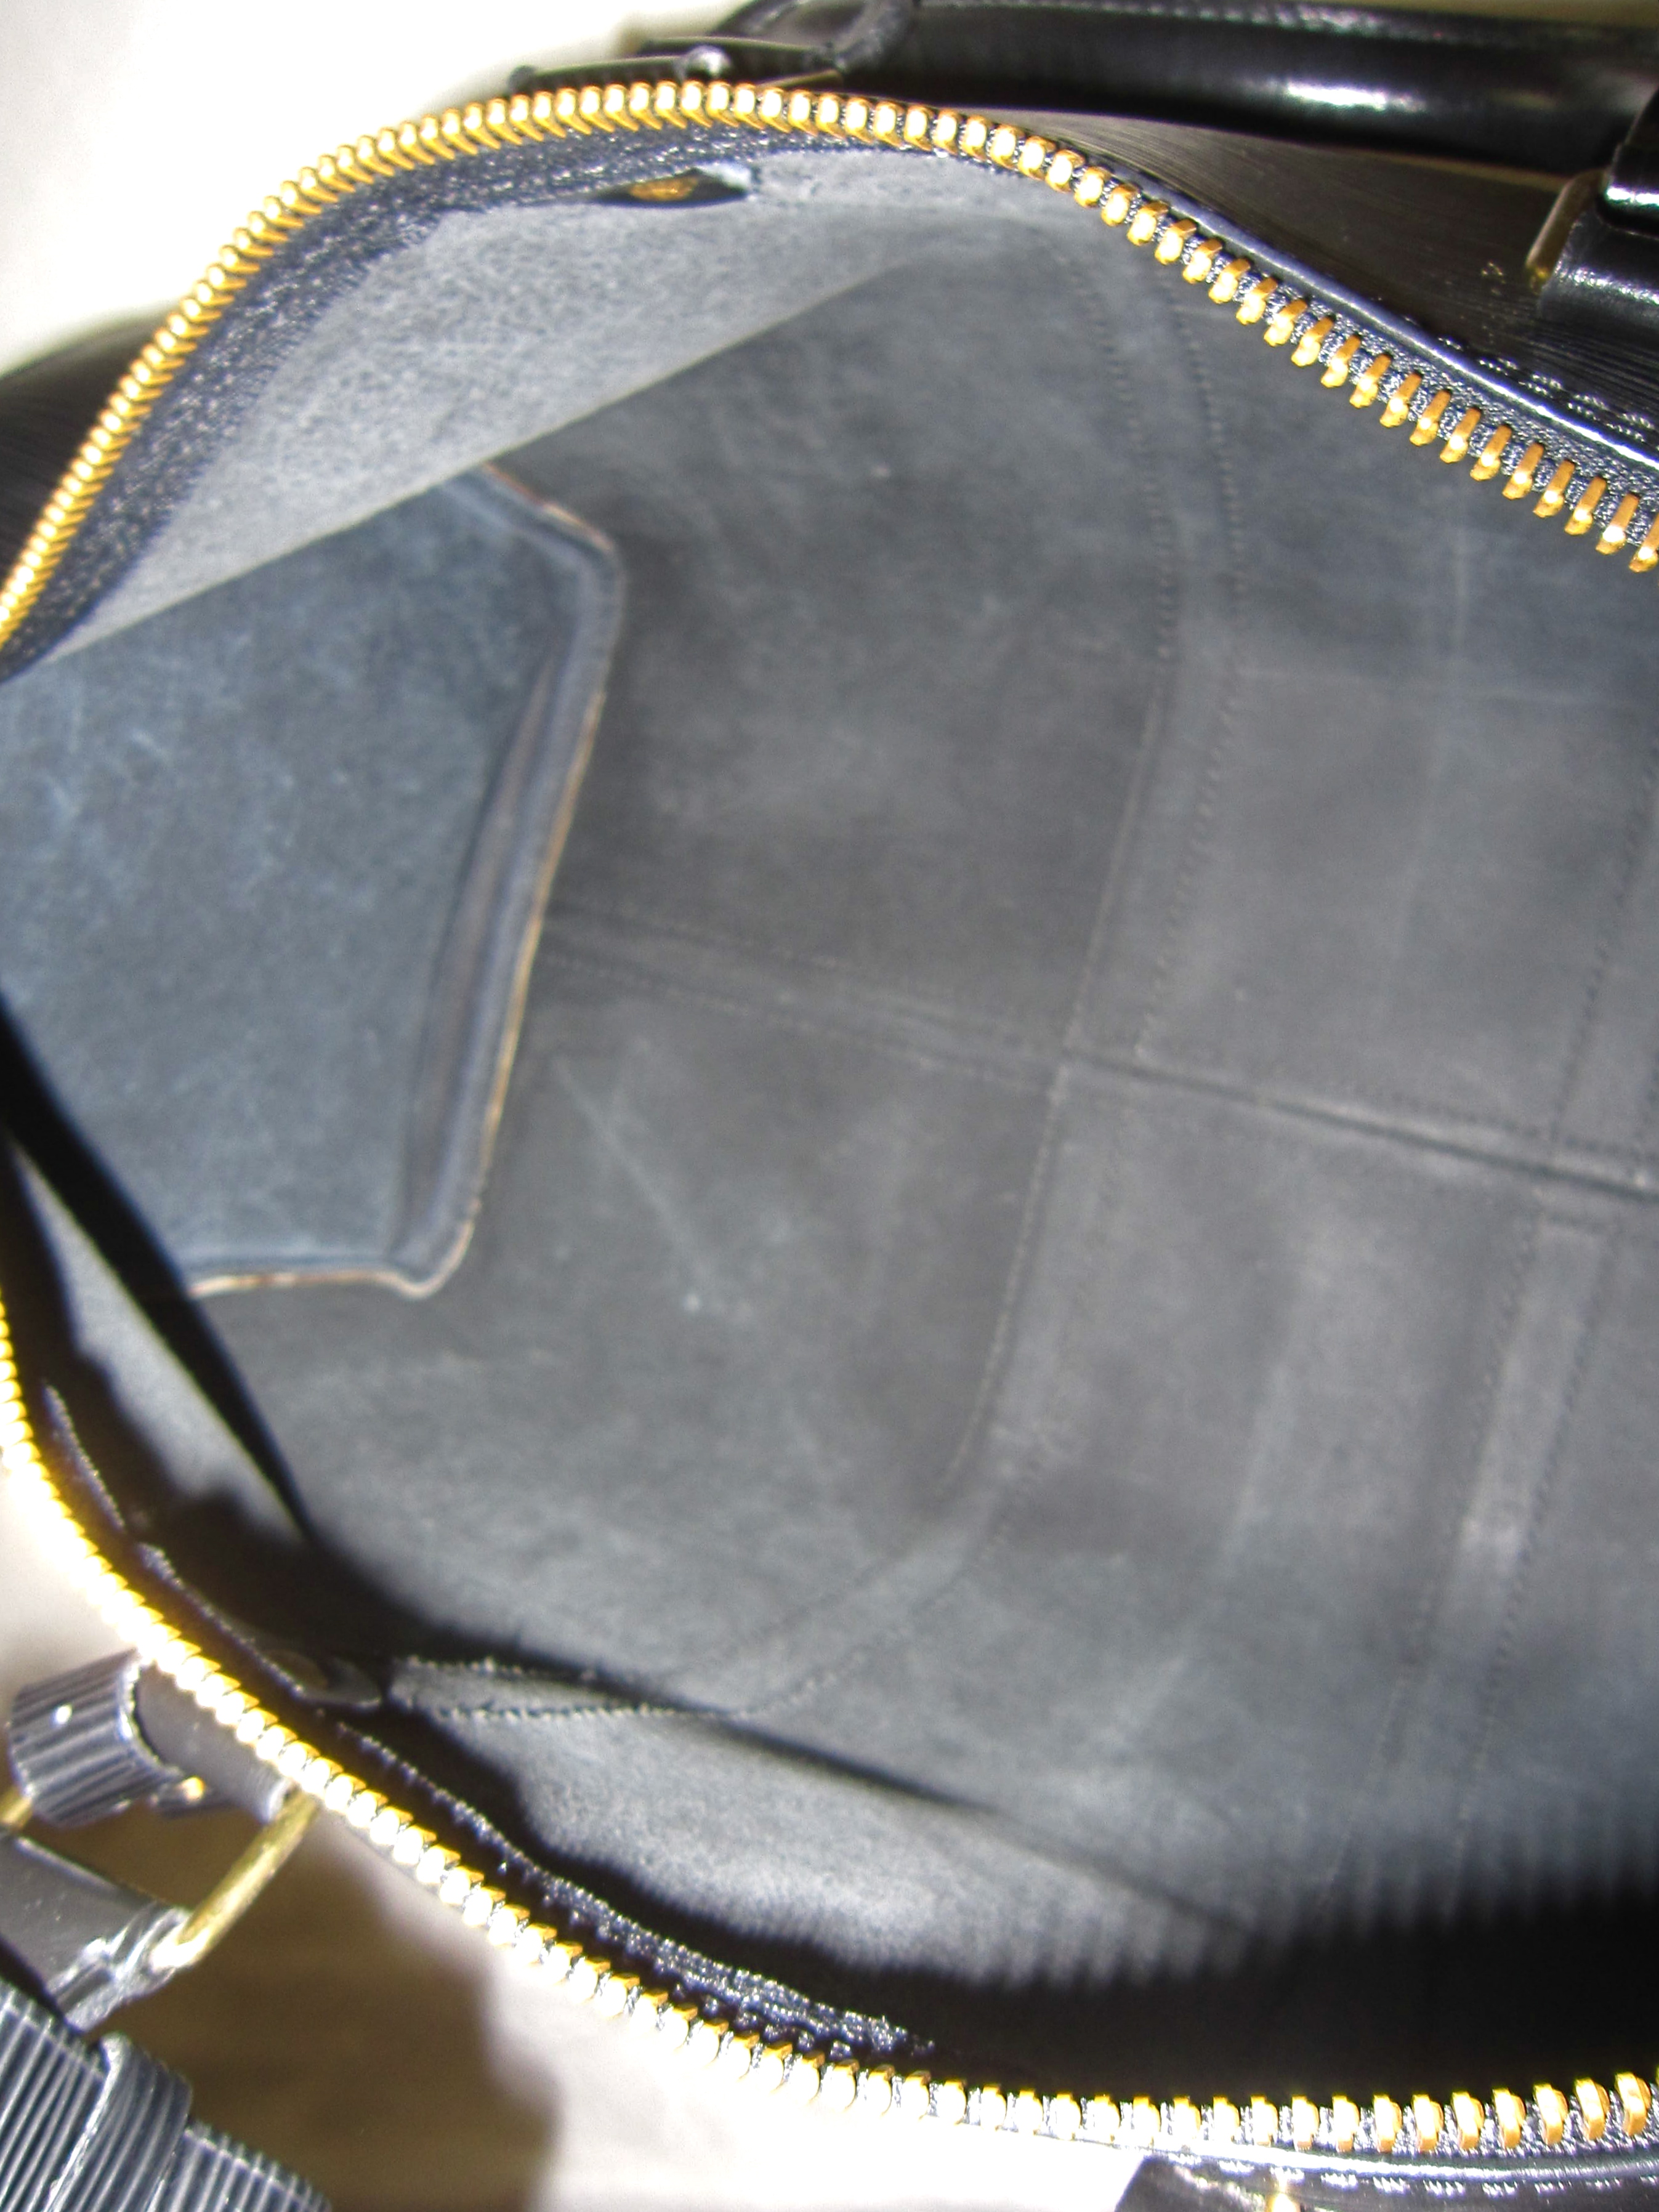 Louis Vuitton Keepall 45 weekndbag black epi leather - Still in